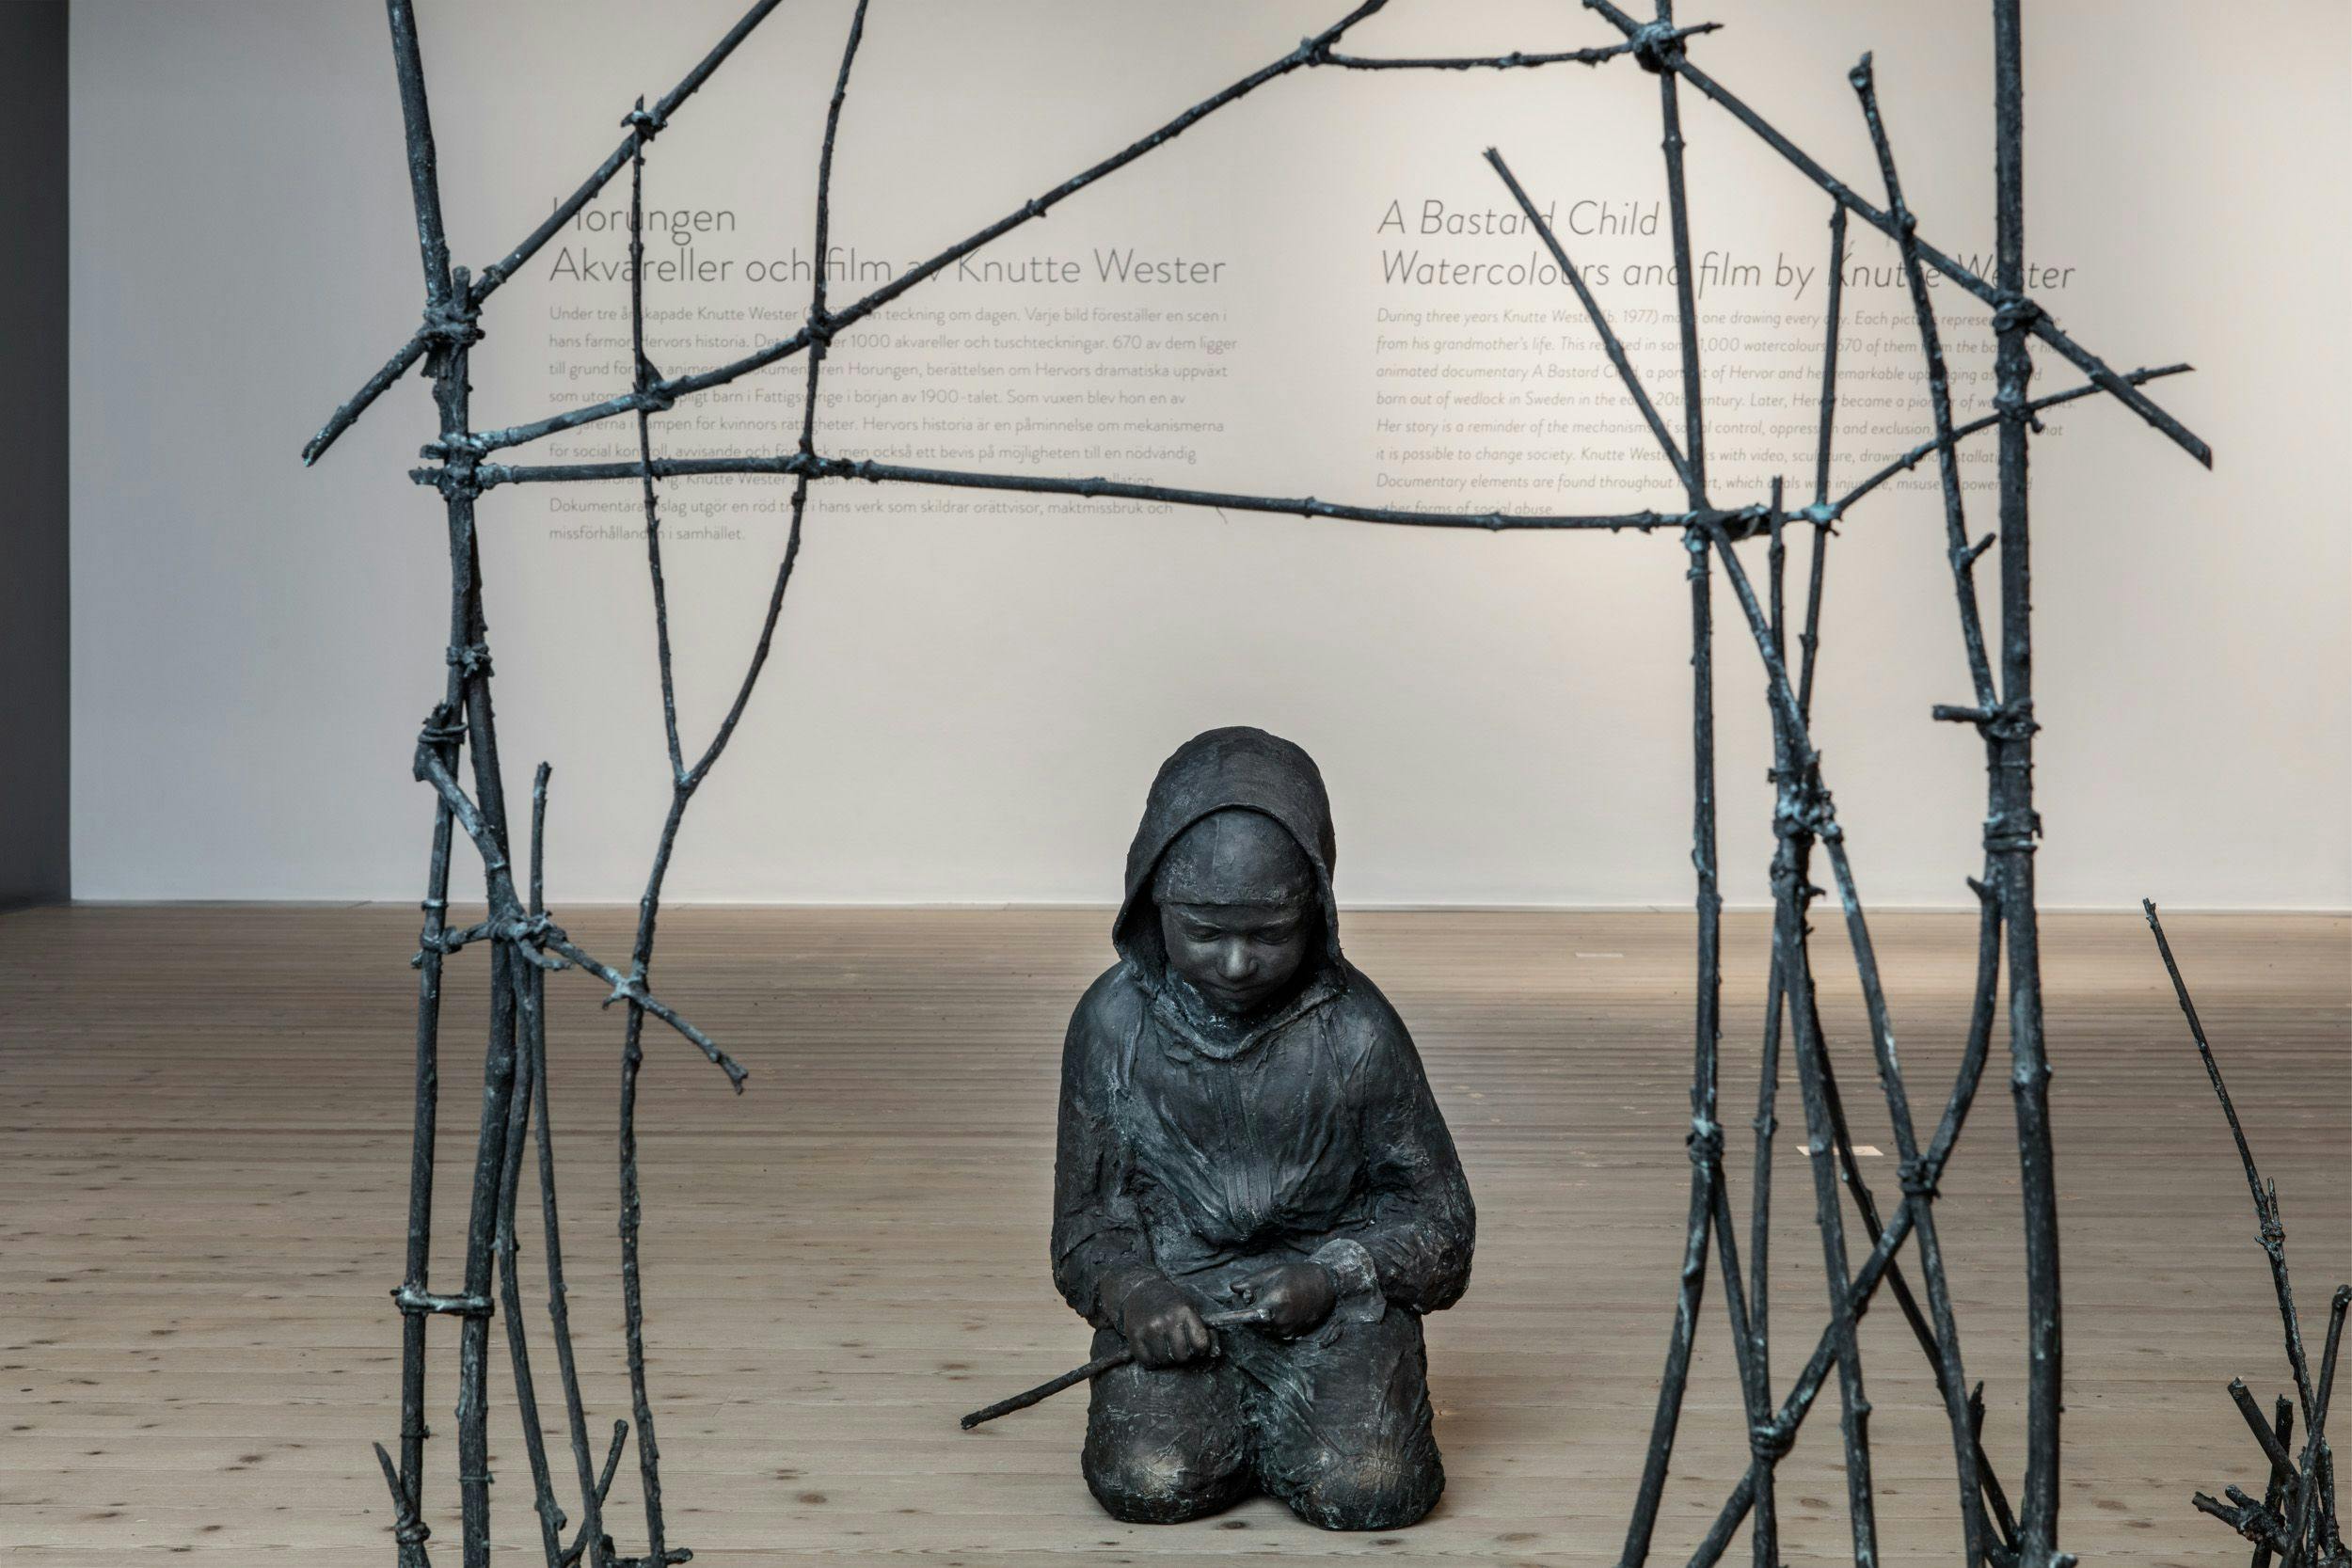 Skulptur av barn under koja byggd av pinna